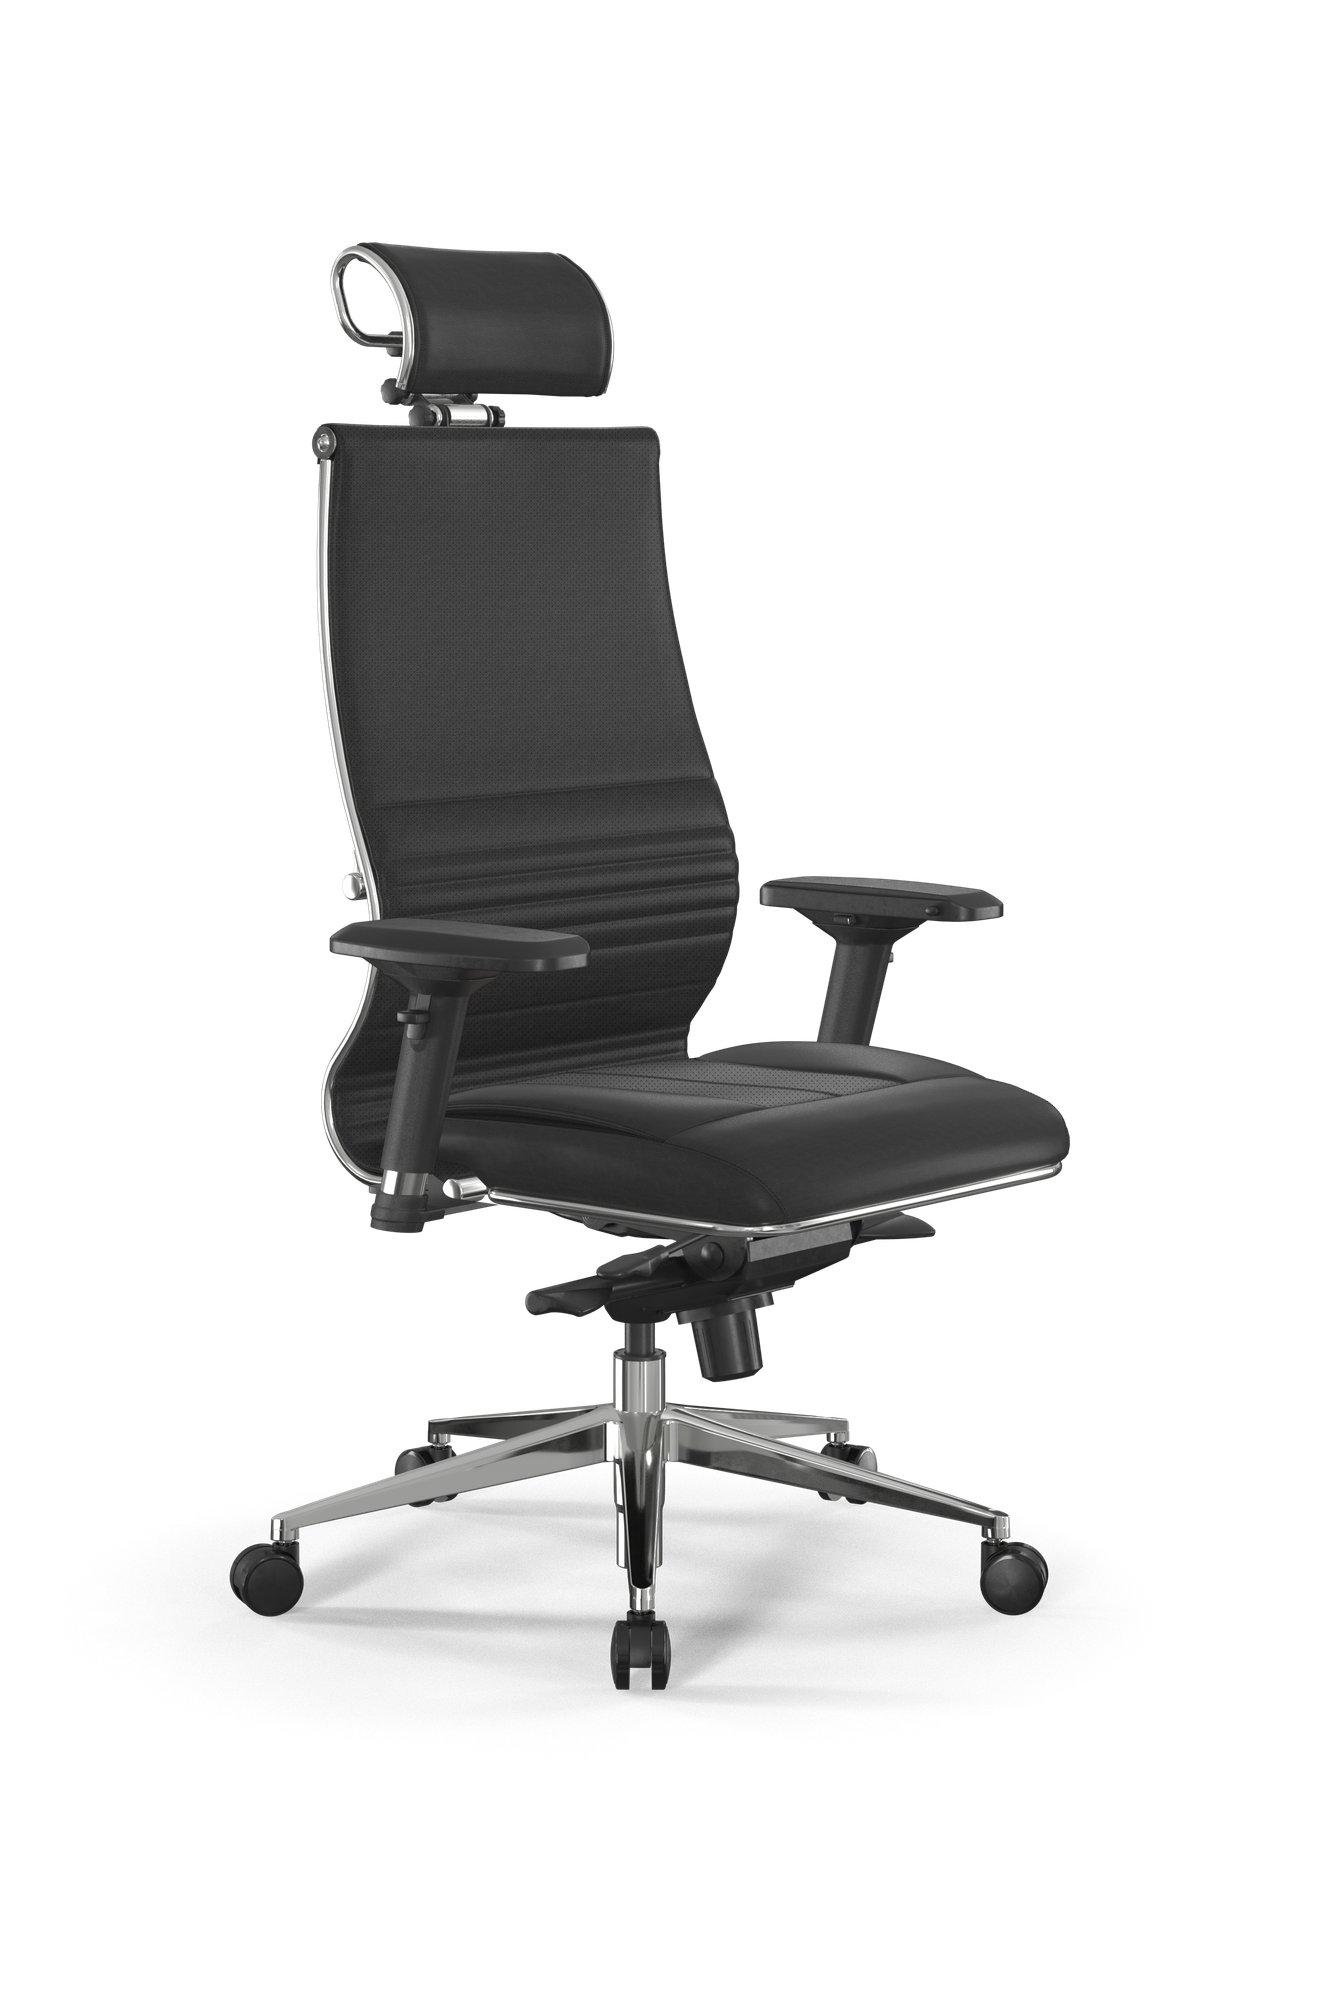 Кресло Samurai Infinity - Metta, кресло офисное, кресло компьютерное, кресло для дома и офиса, кресло самурай, кресло Metta (Черный)